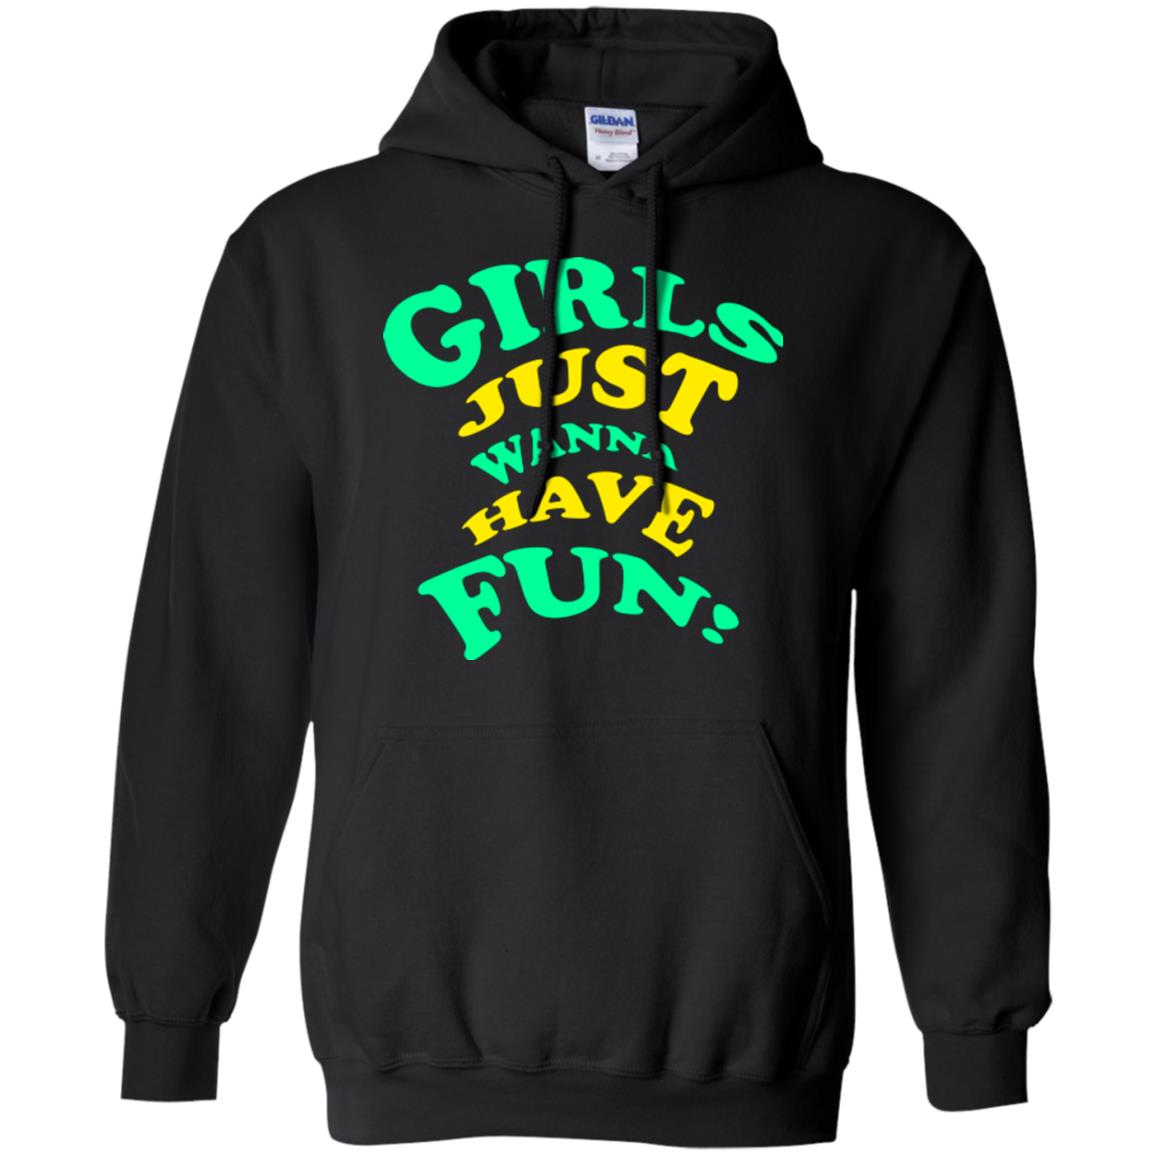 Girls Just Wanna Have Fun T-shirt